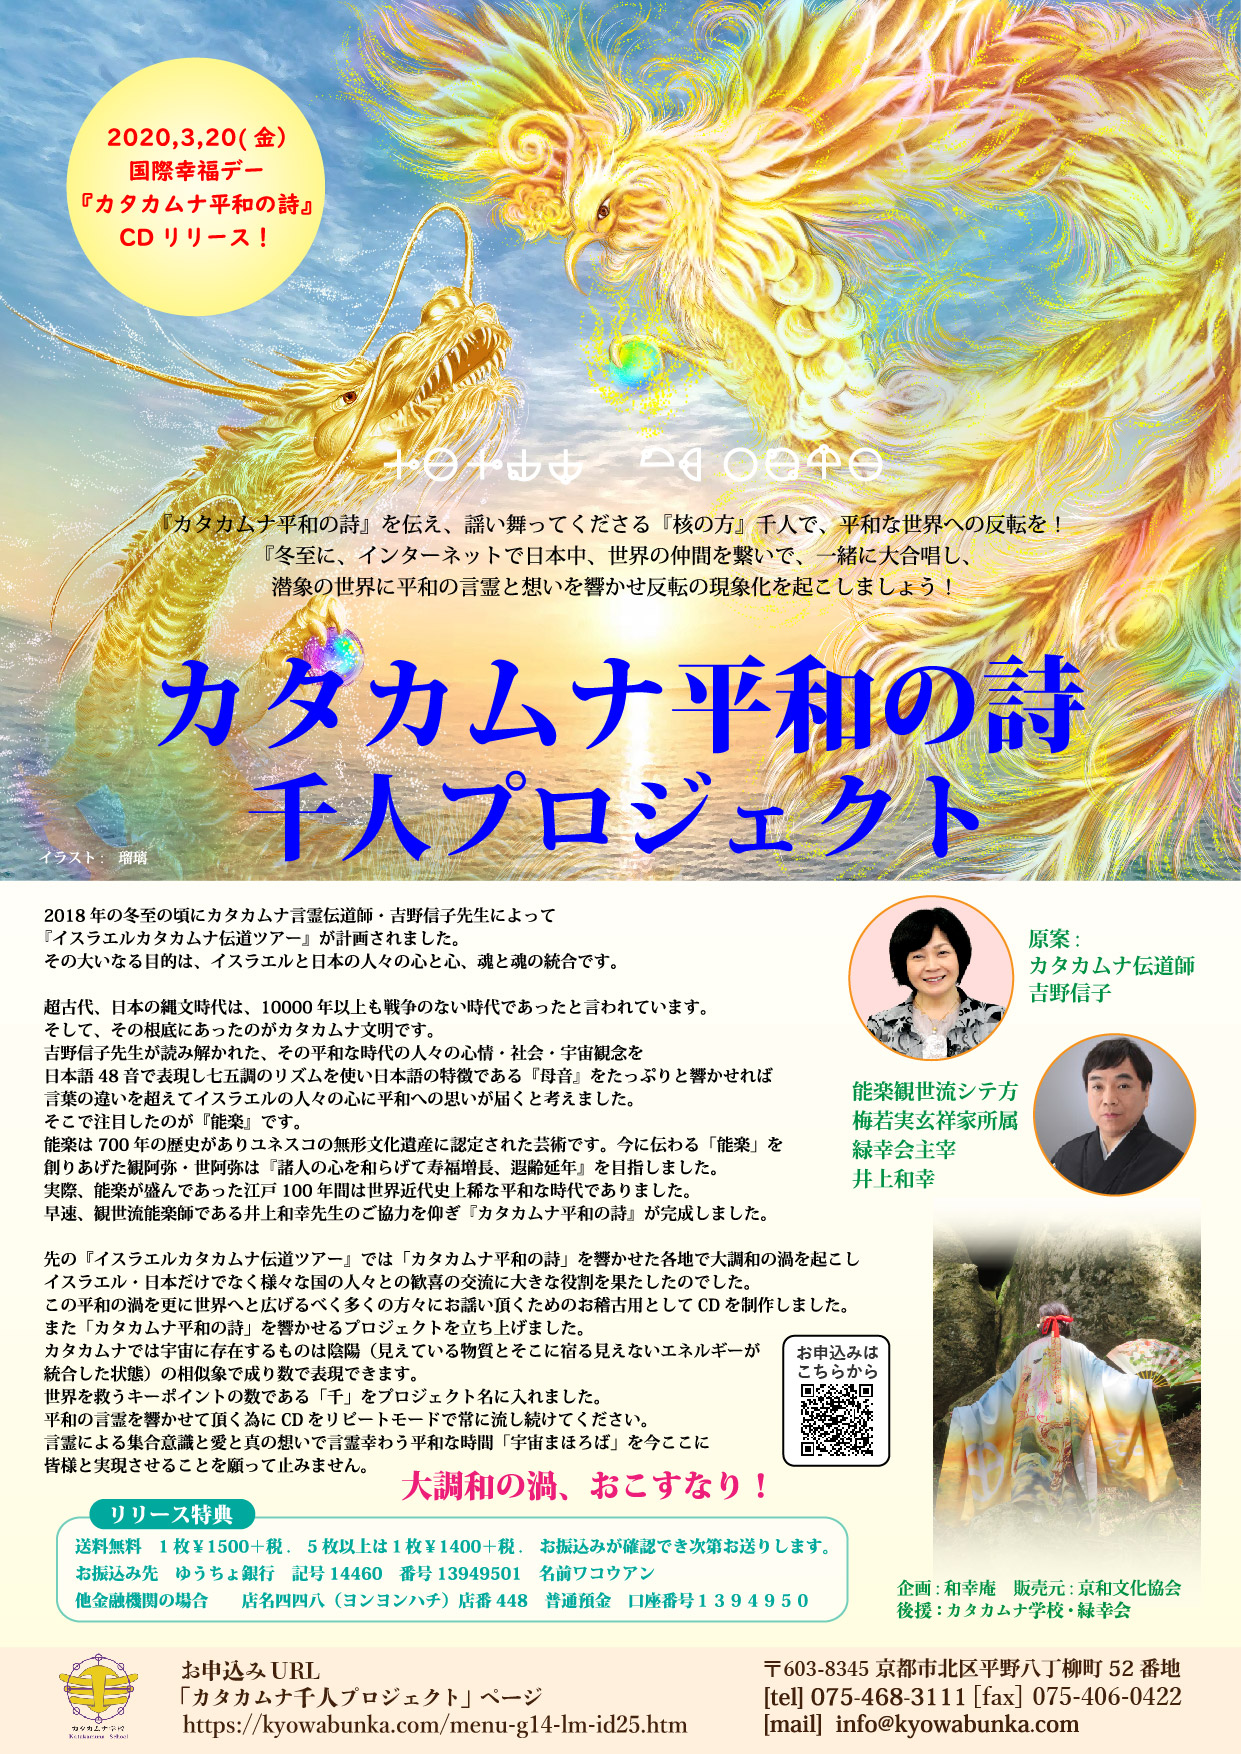 カタカムナ平和の詩 千人プロジェクトについて 京和文化協会